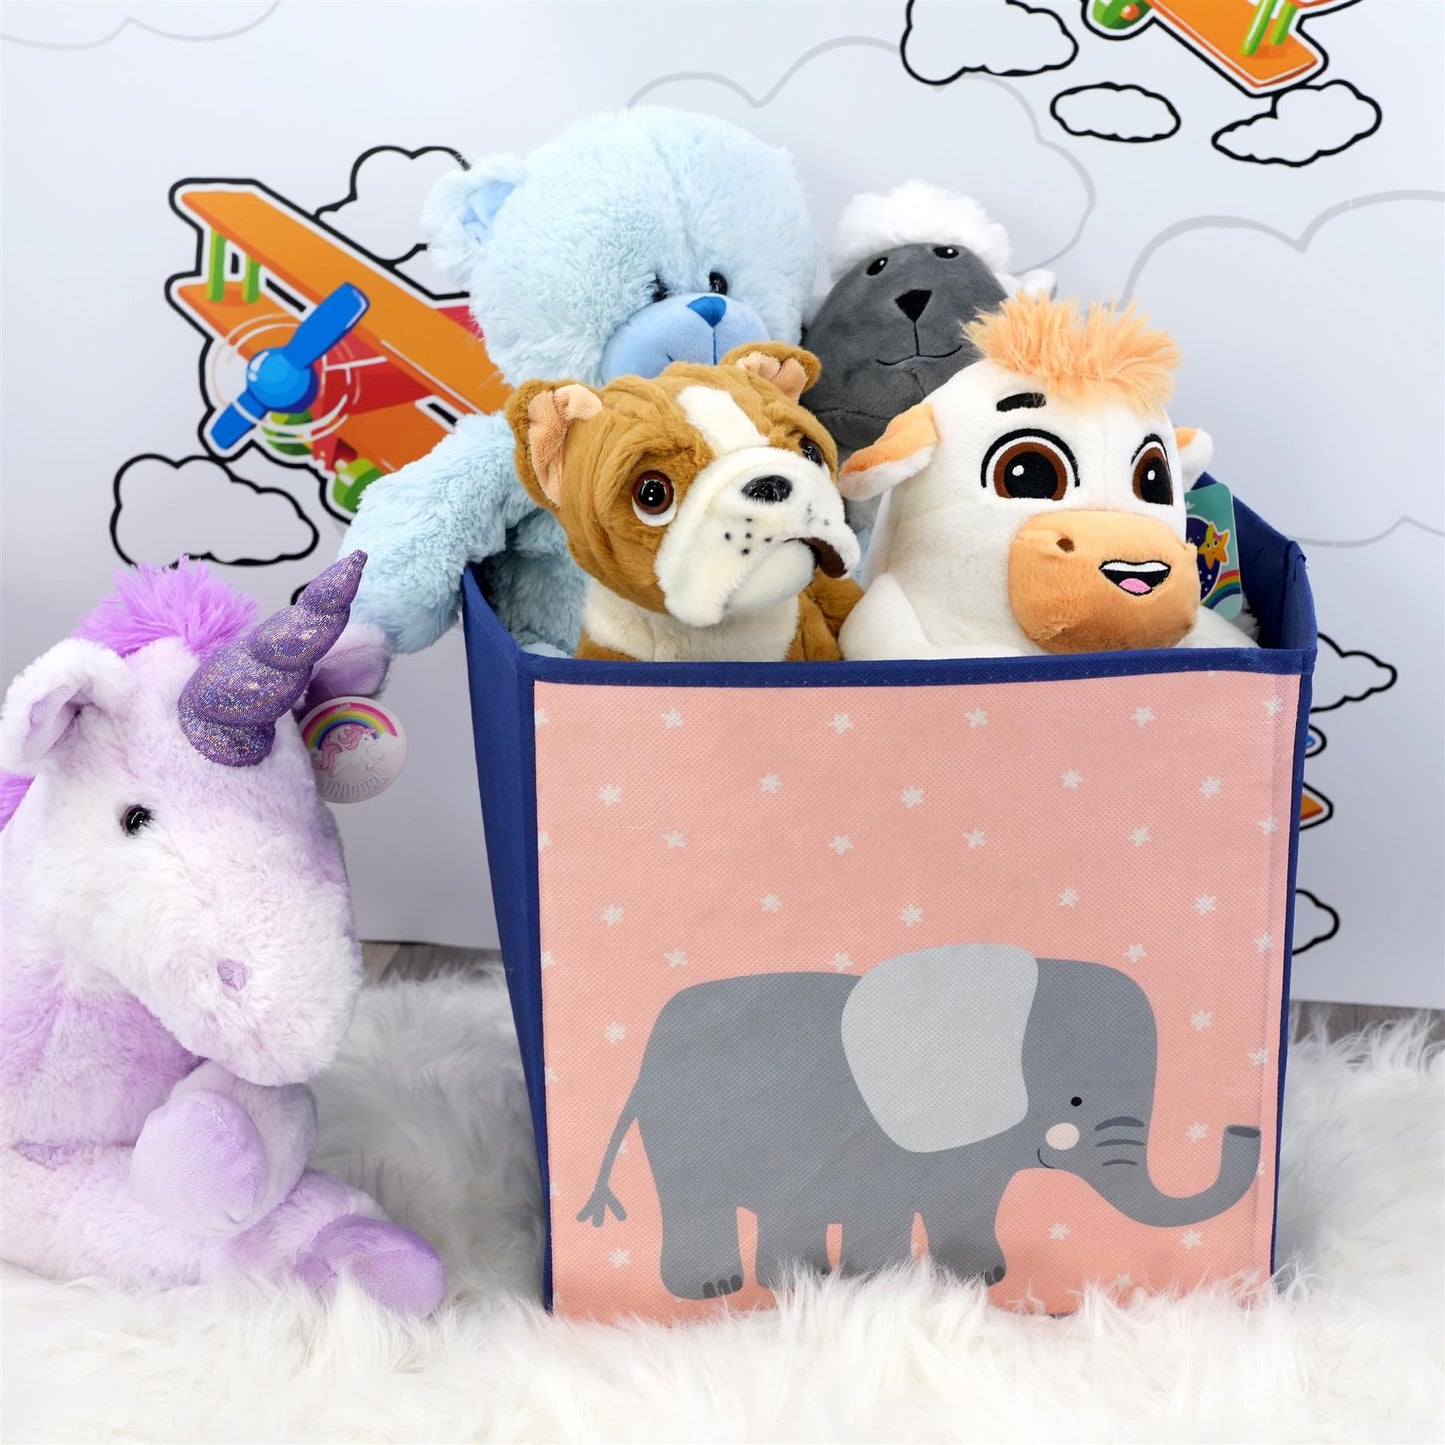 Elephant Design Foldable Storage Box by The Magic Toy Shop - UKBuyZone